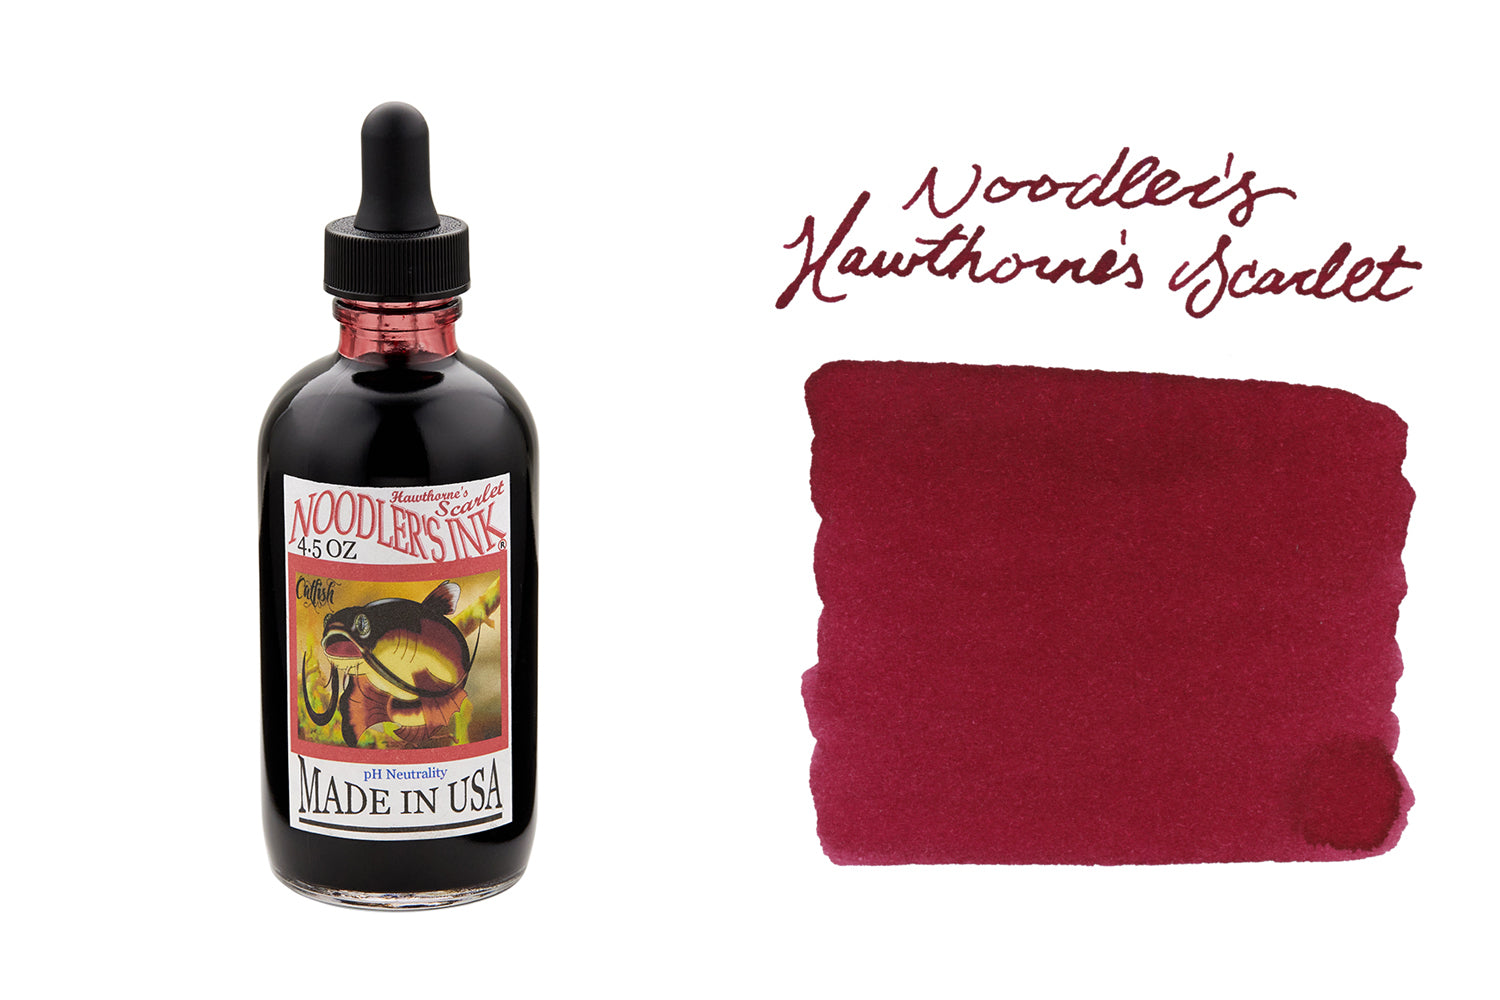 Noodler's Hawthorne's Scarlet - 4.5oz Bottled Ink with Free Charlie Pen